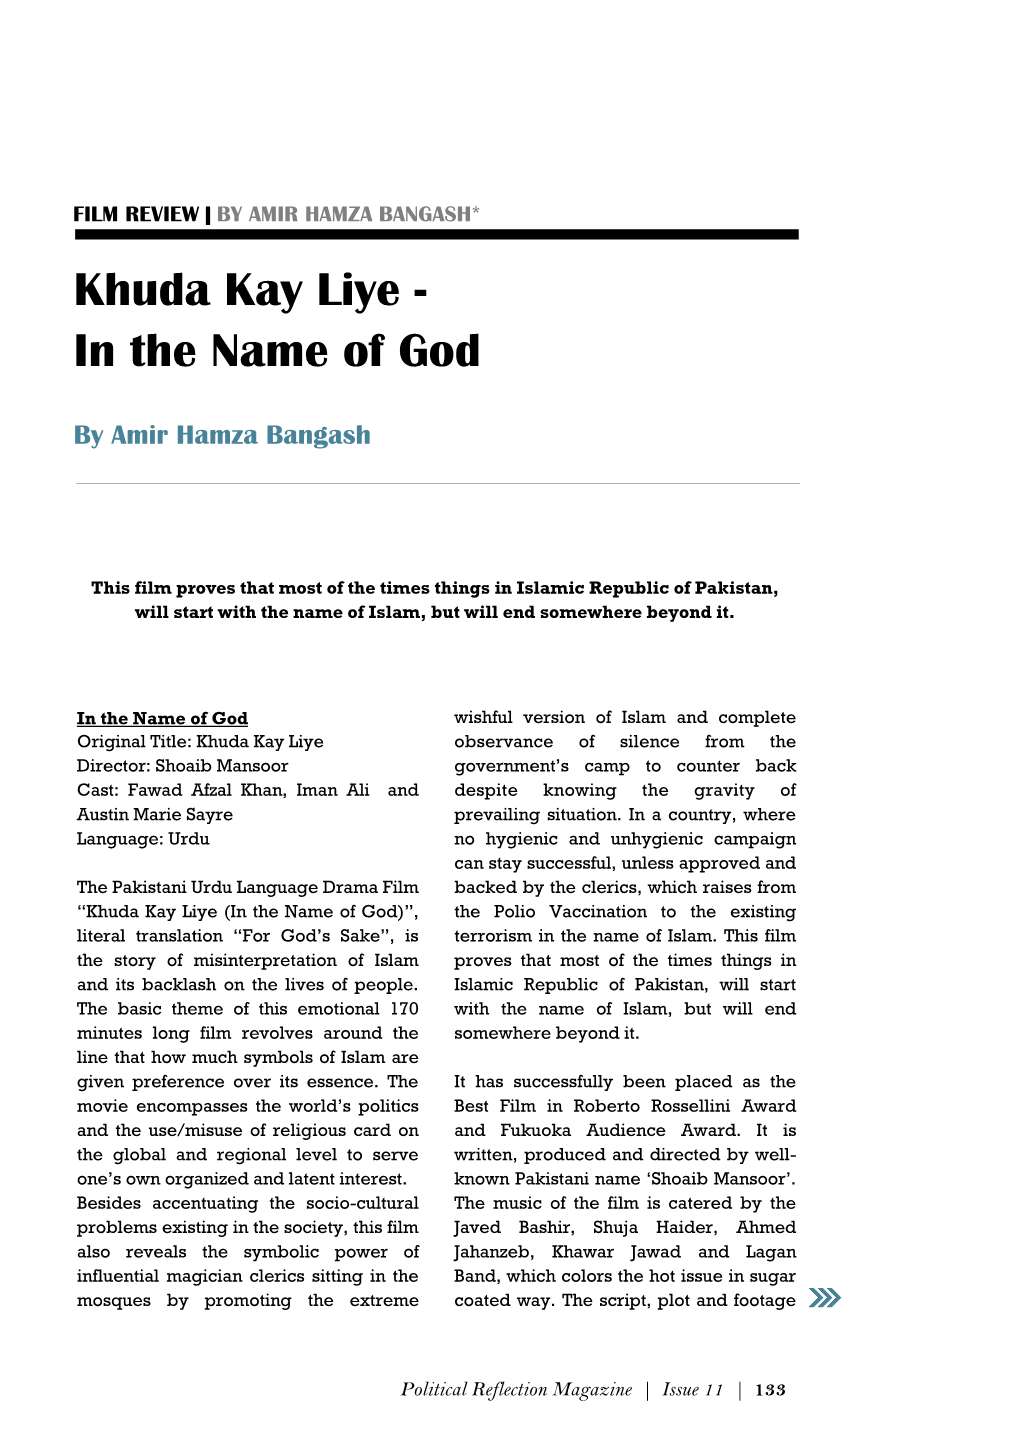 Khuda Kay Liye - in the Name of God